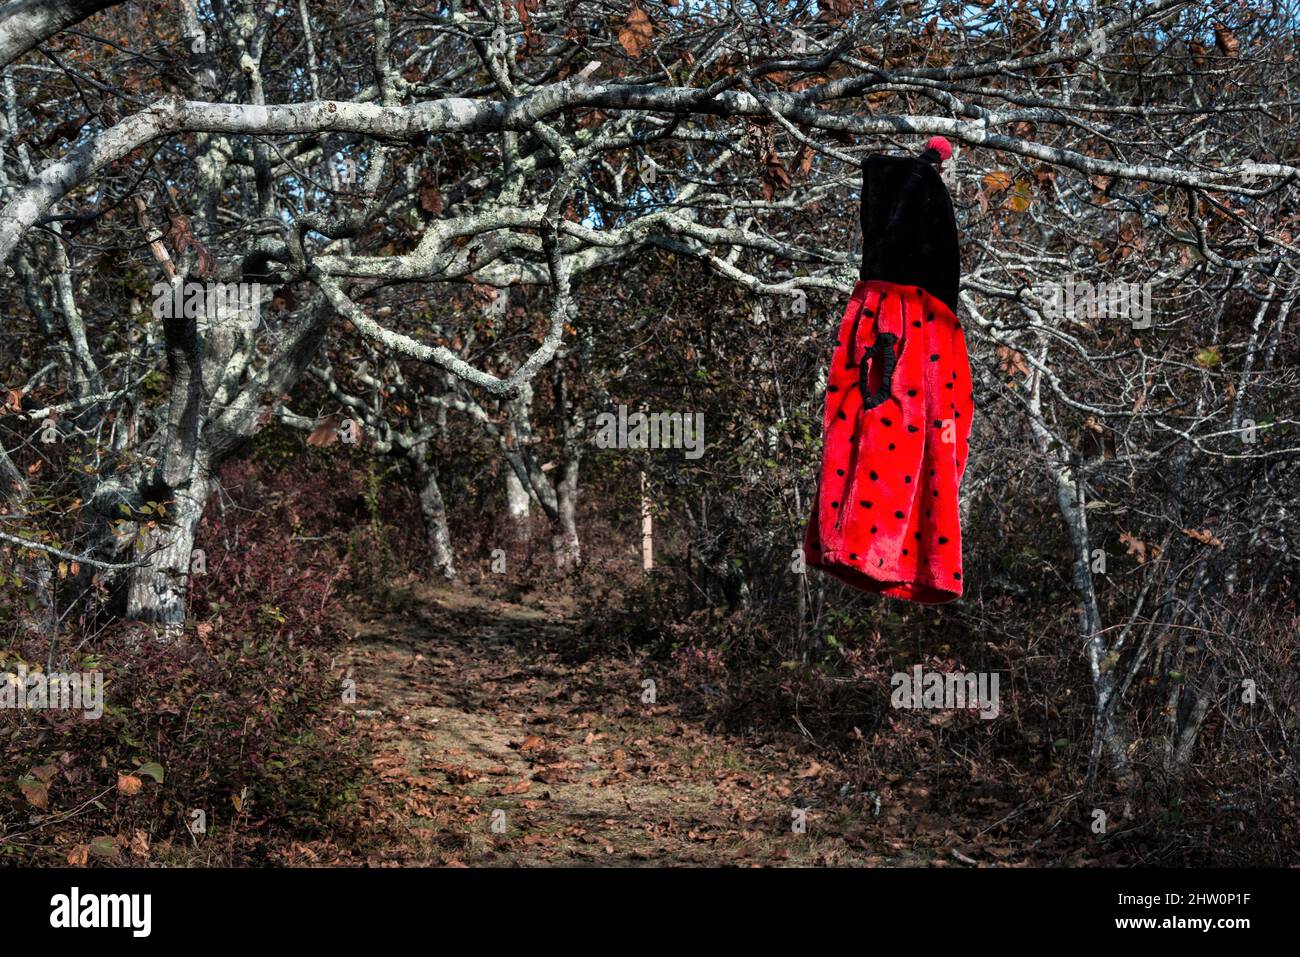 El abrigo de las niñas cuelga de un árbol a lo largo de un camino remoto. Foto de stock